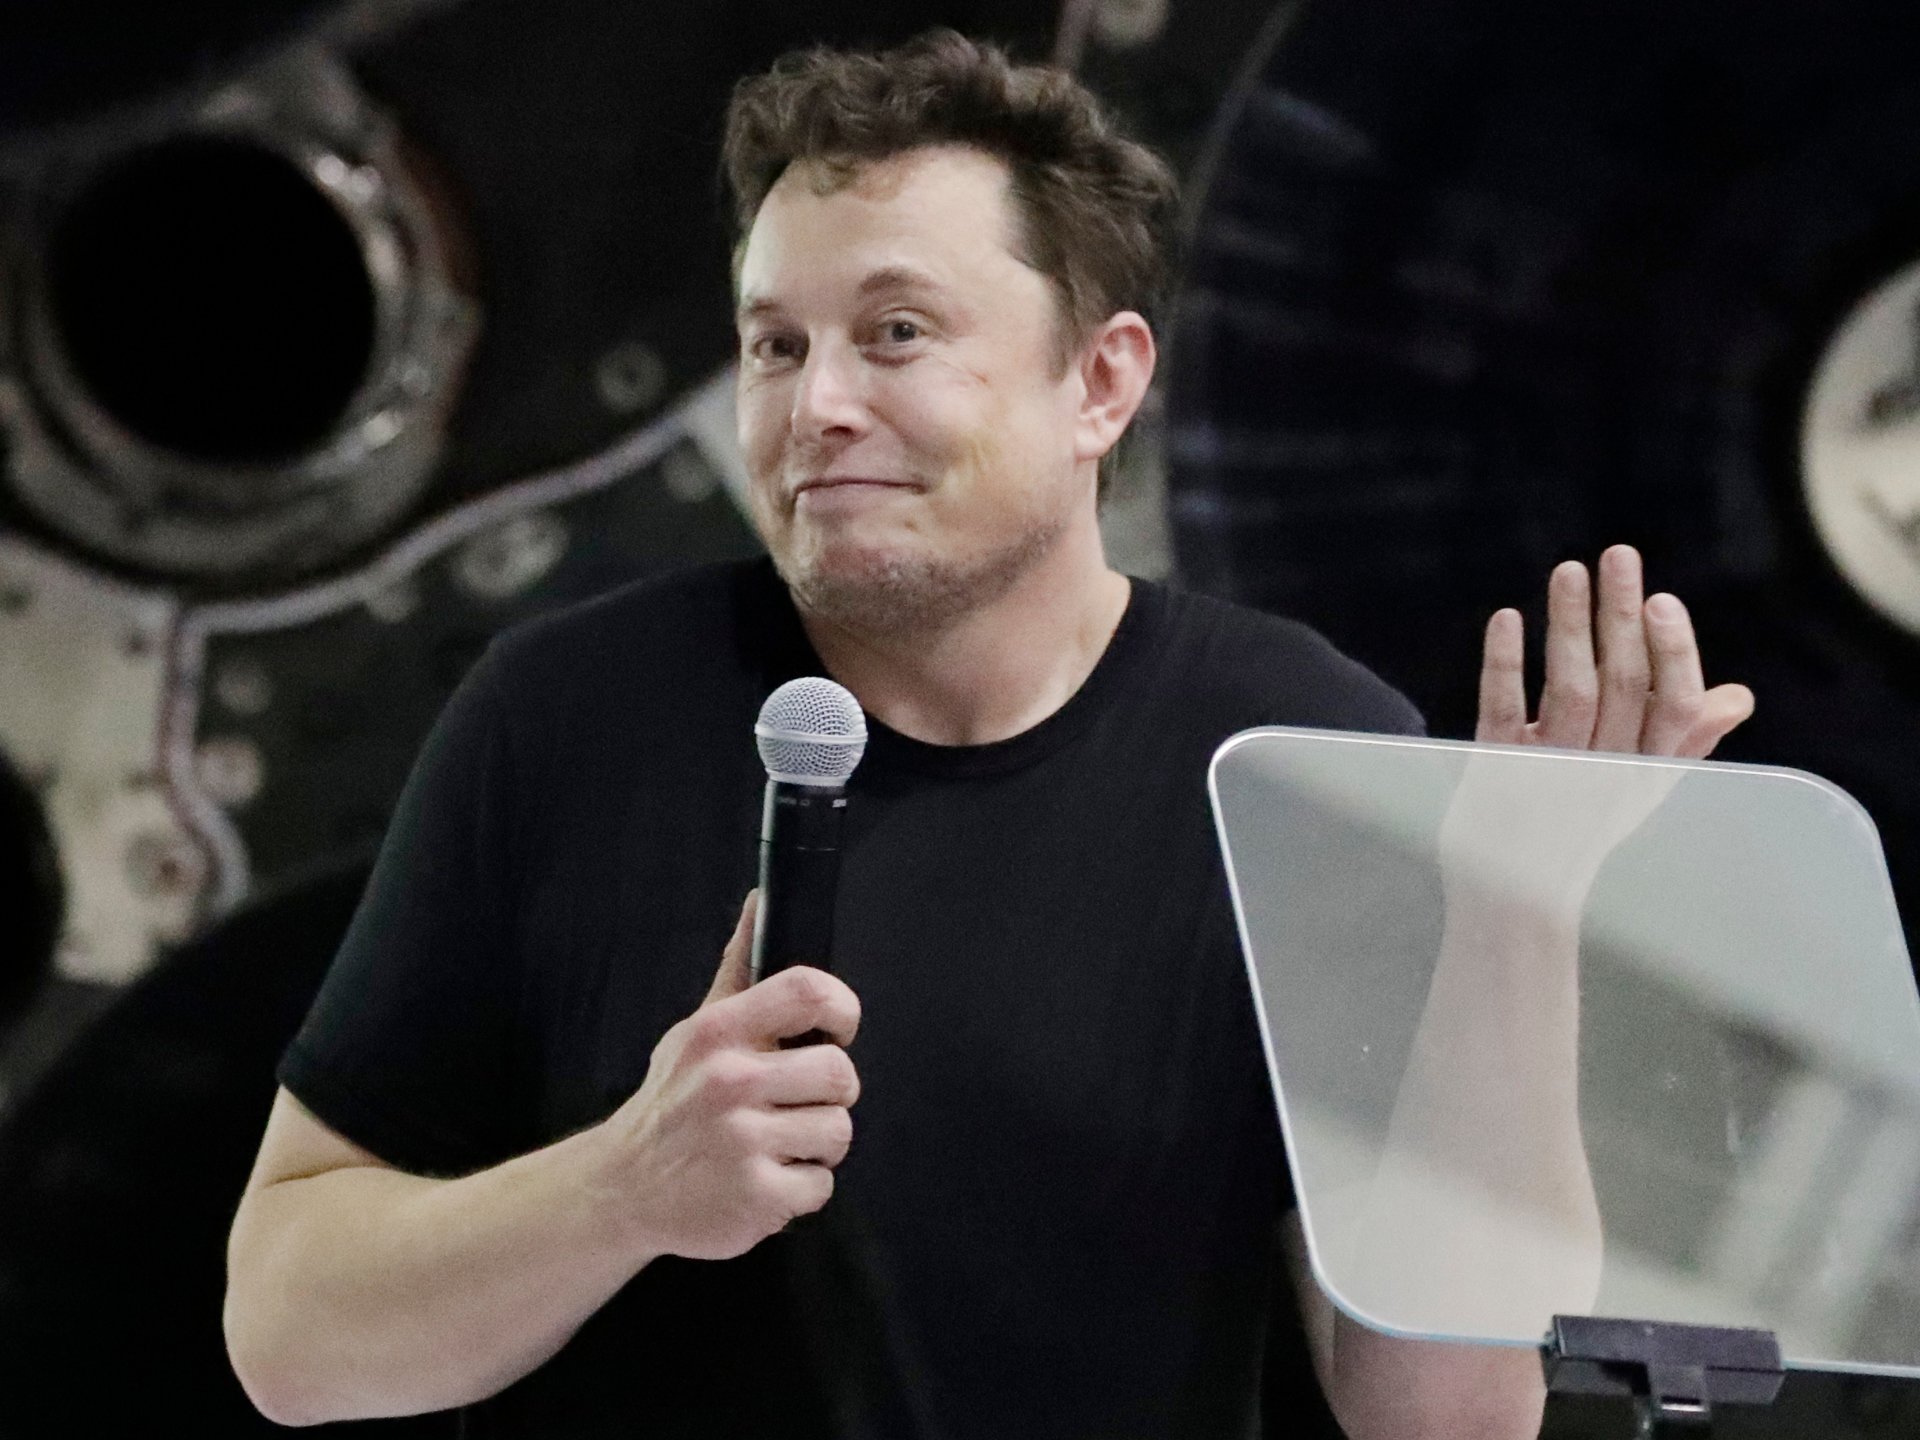 ใจเย็น! อีลอน มัสก์บอกพนักงาน Tesla ไม่ต้องเร่งทำยอดขนส่งรถก็ได้